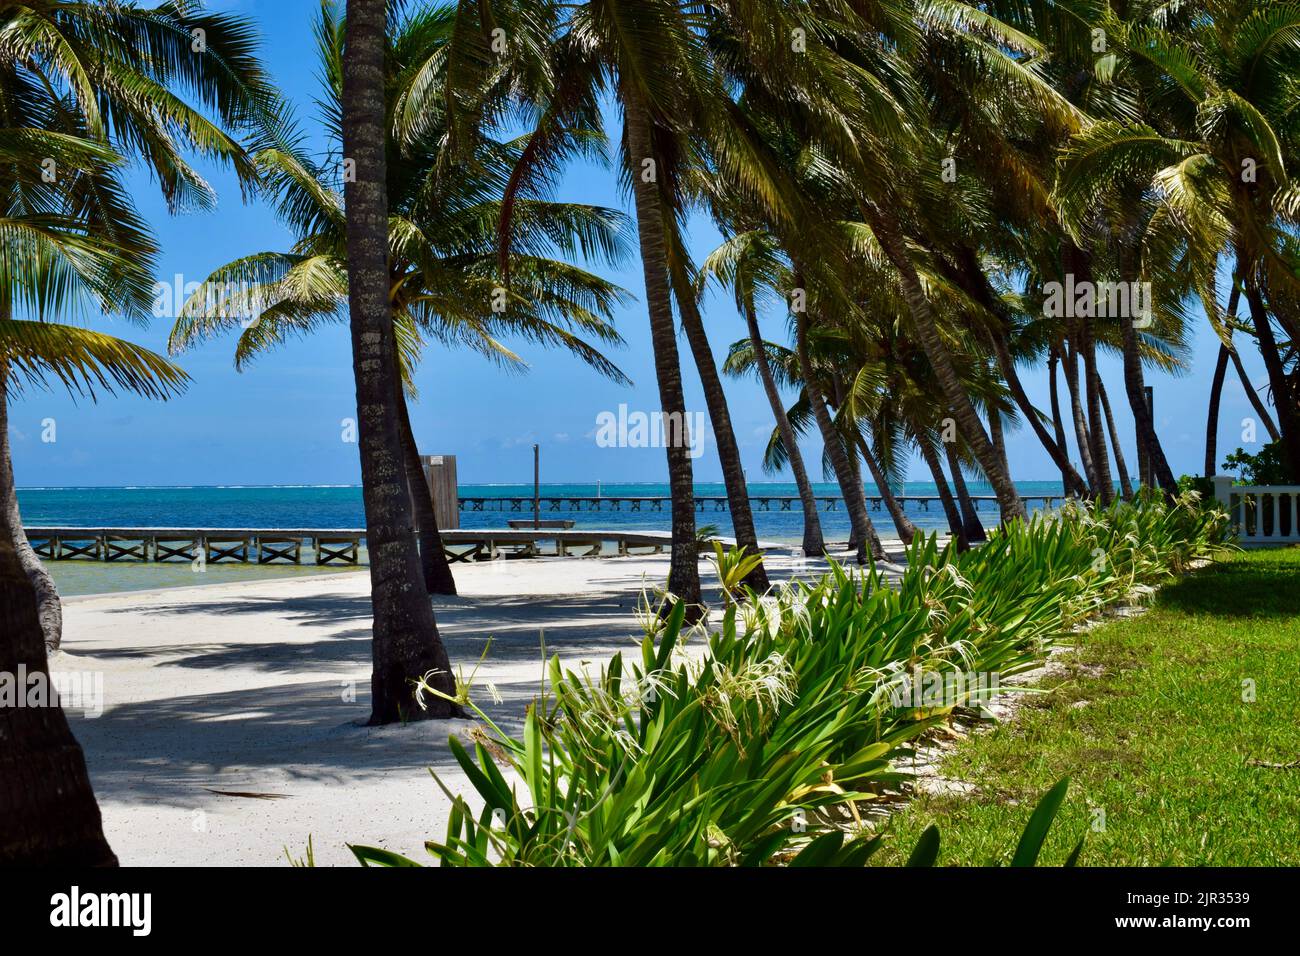 Une scène tropicale sur Ambergris Caye, San Pedro, Belize, avec un quai, palmiers, sable blanc et plantes tropicales. Banque D'Images